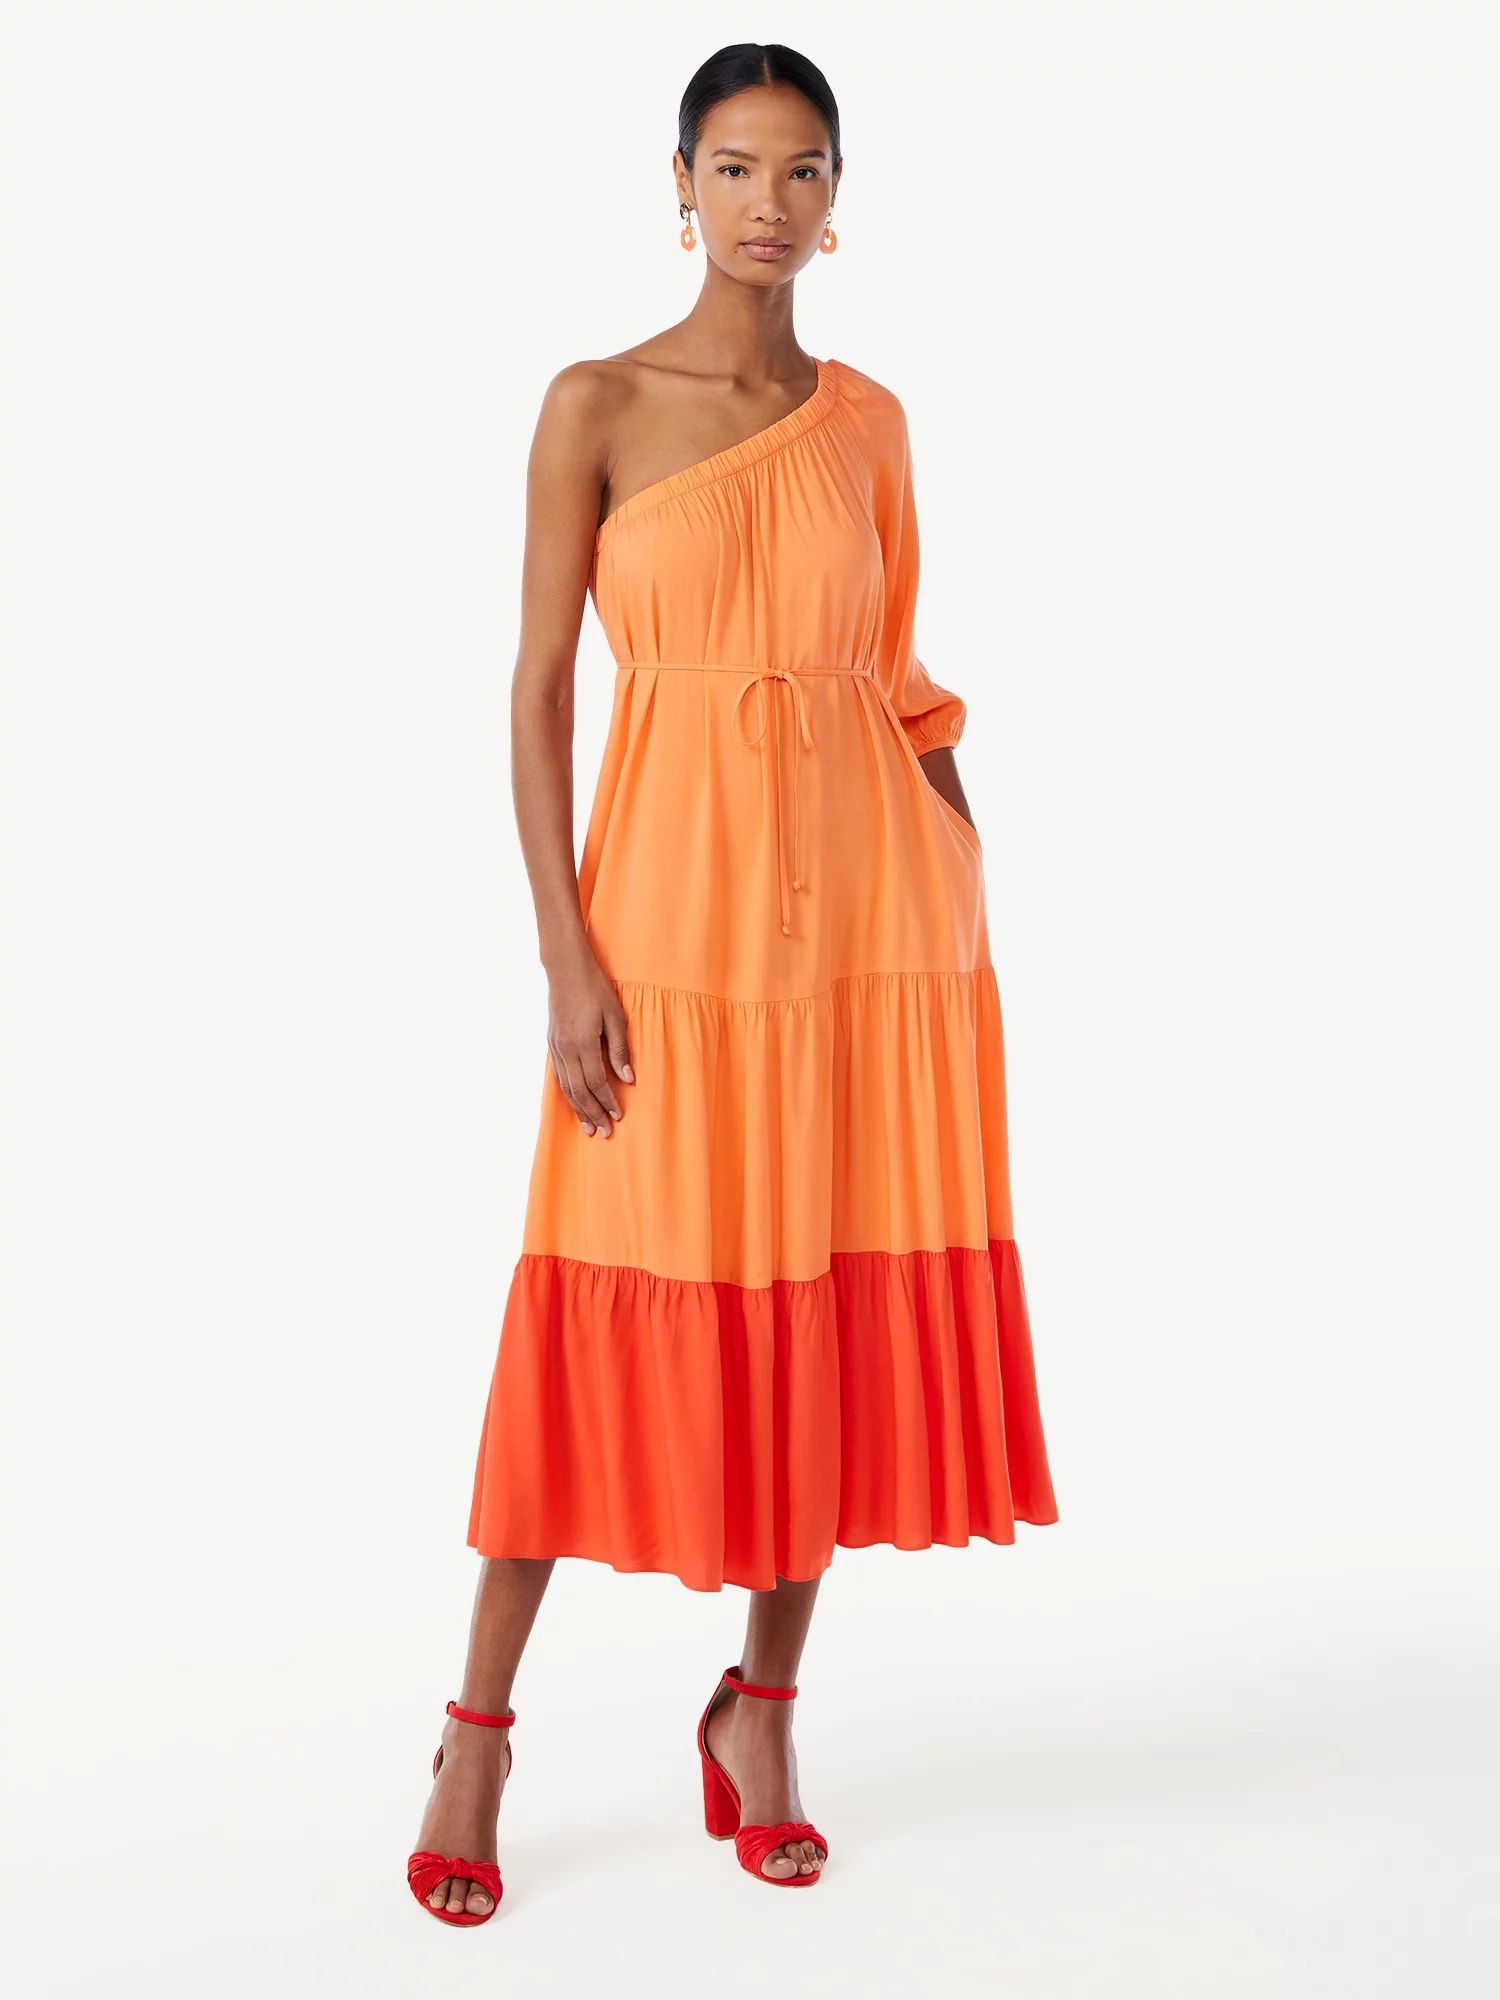 Scoop Women's One Shoulder Color Block Maxi Dress with Tie Front | Walmart (US)